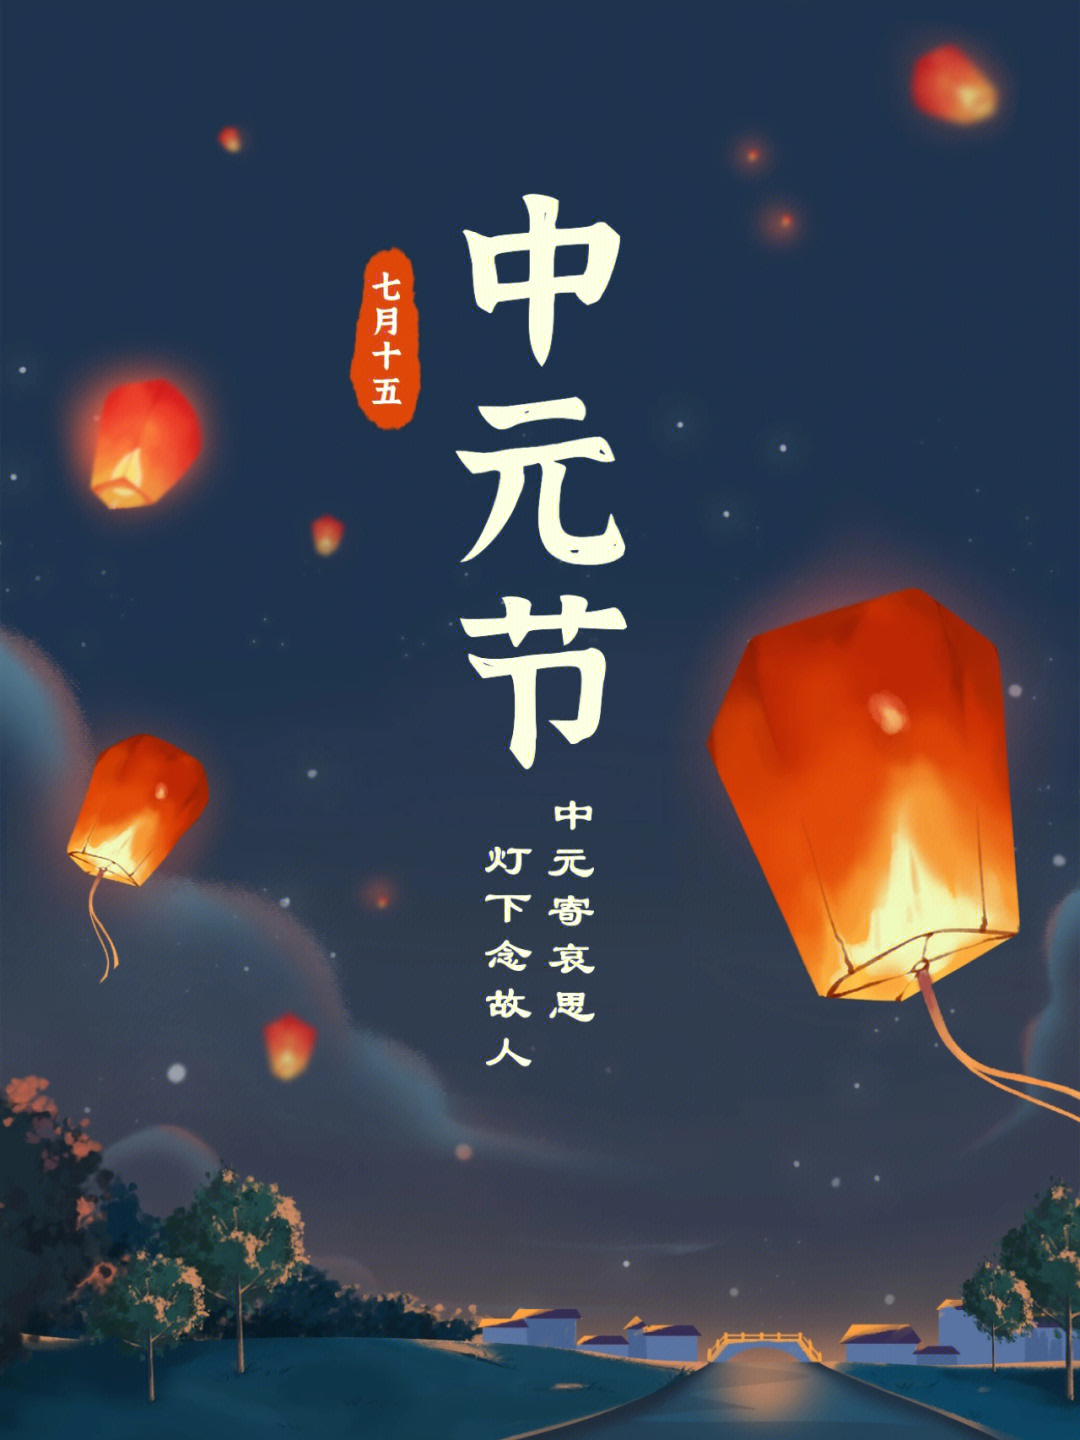 中元节祝福语图片图片